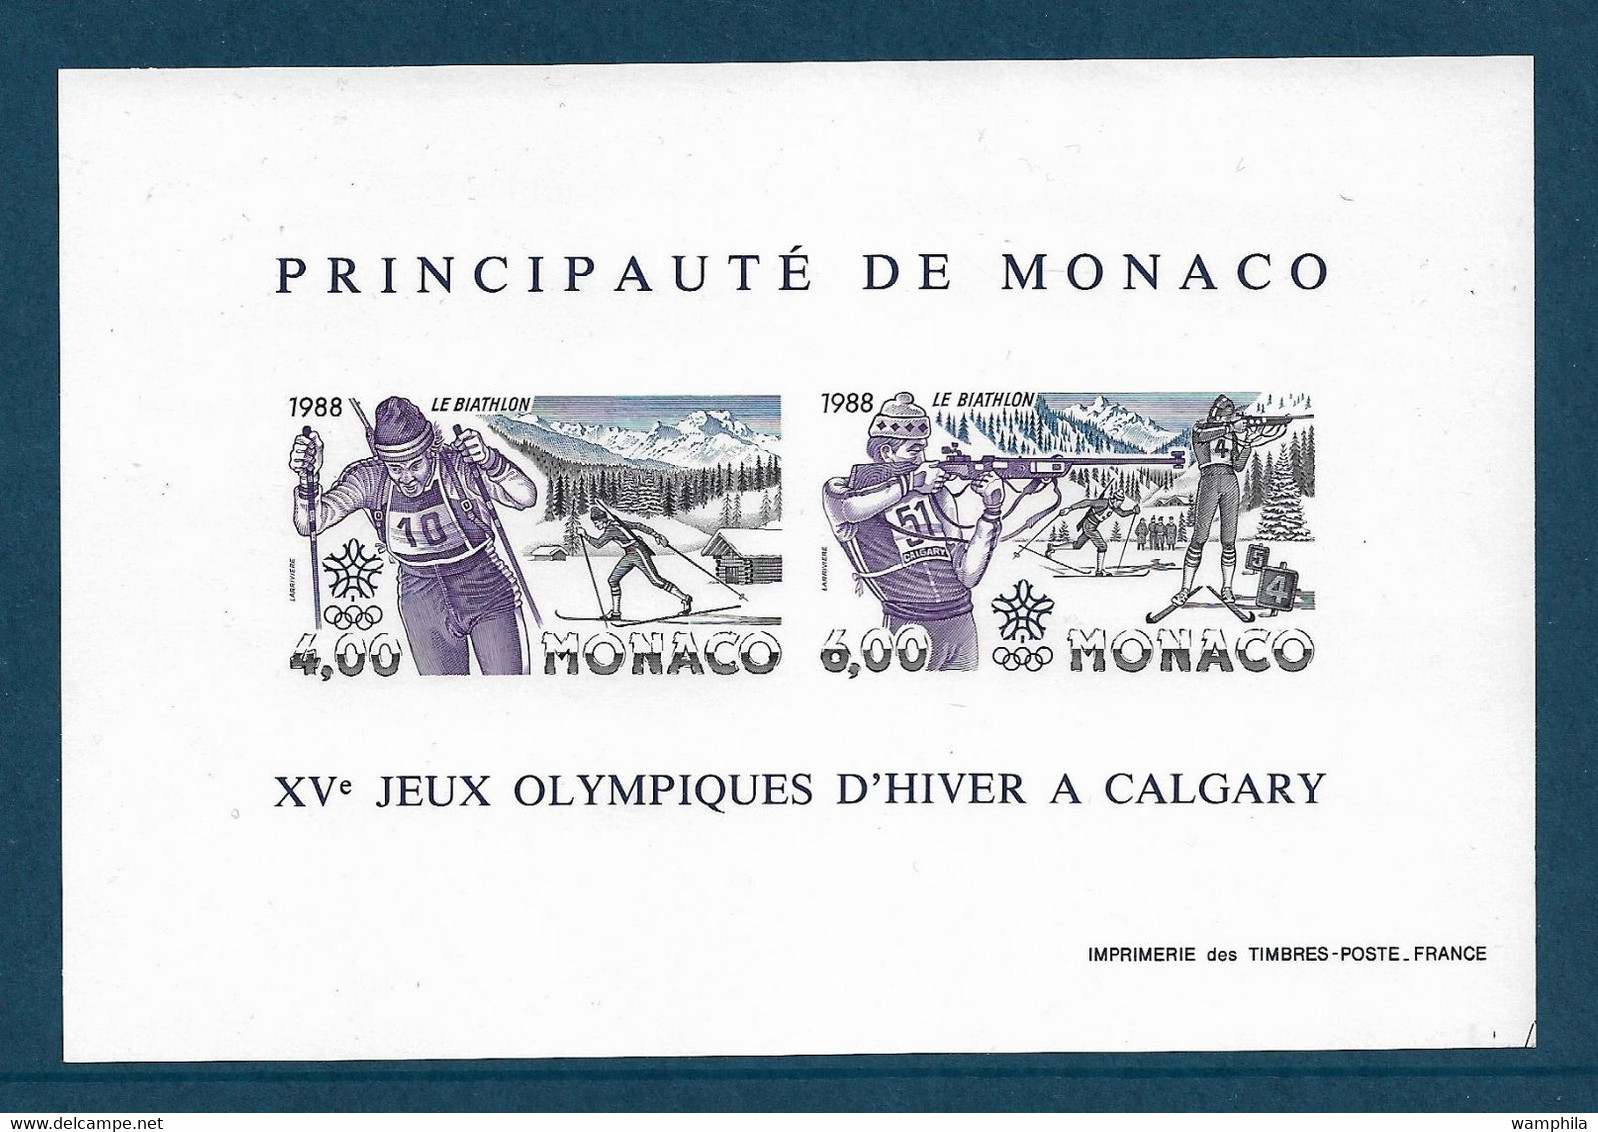 Monaco Bloc Gommé N°40a** Des Timbres N°1621/1622 Non Dentelé, Jeux Olympique Tir Et Ski Cote 310€ - Winter 1988: Calgary